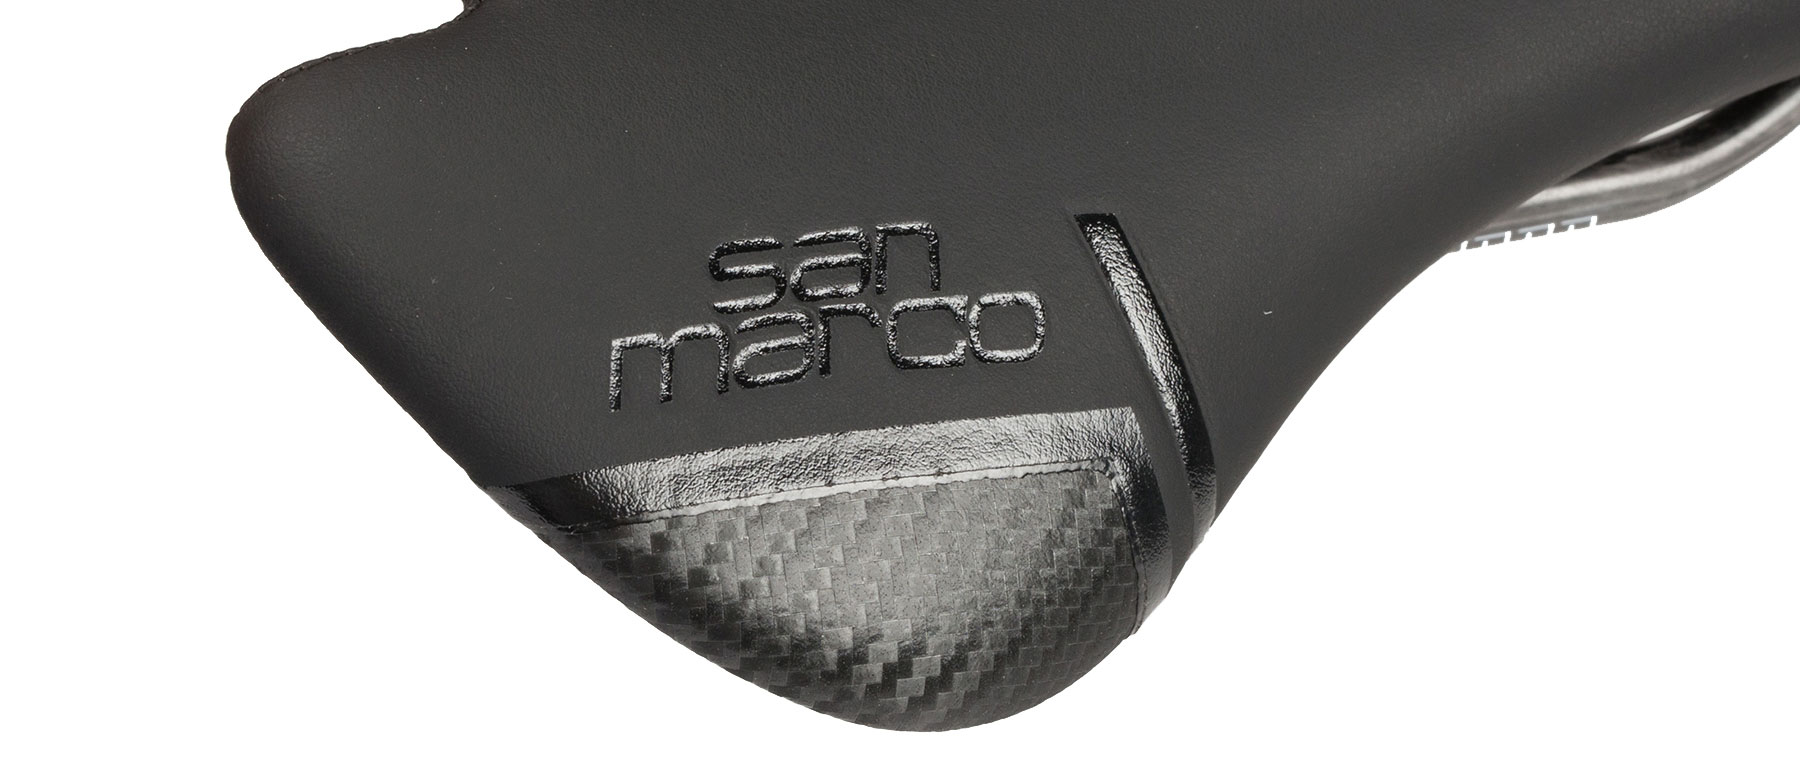 Selle San Marco Aspide Carbon FX Open-Fit Saddle